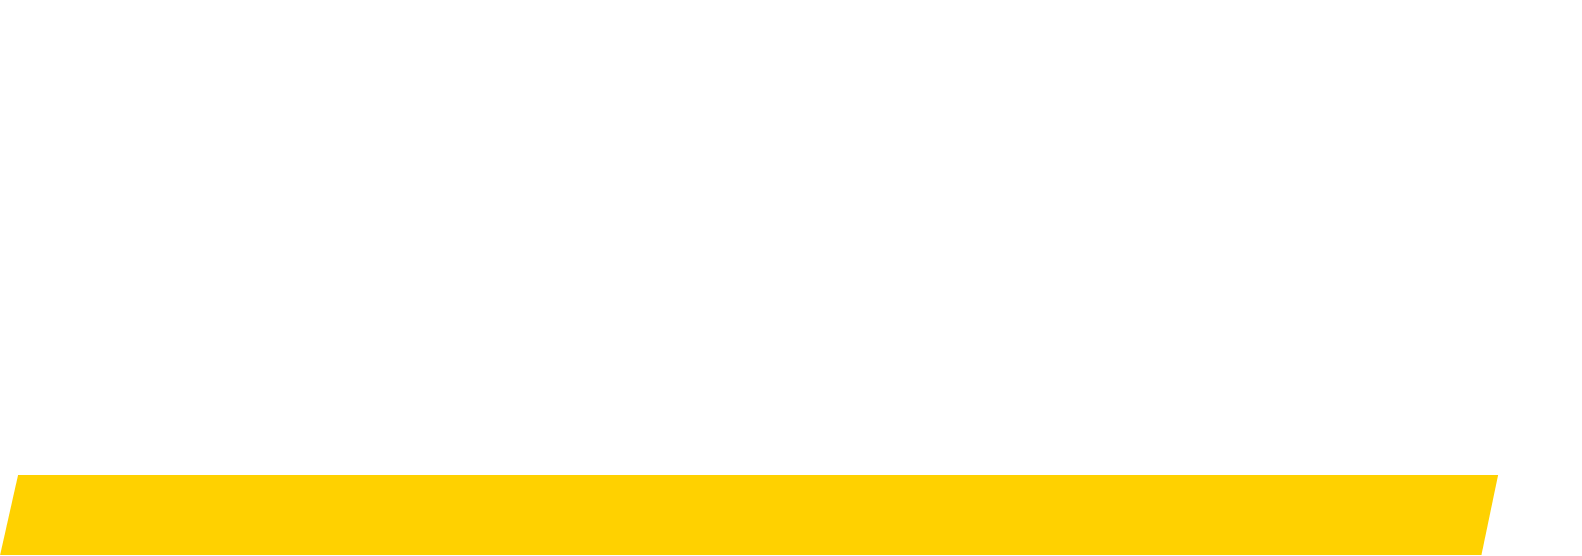 Hertz logo pour fonds sombres (PNG transparent)